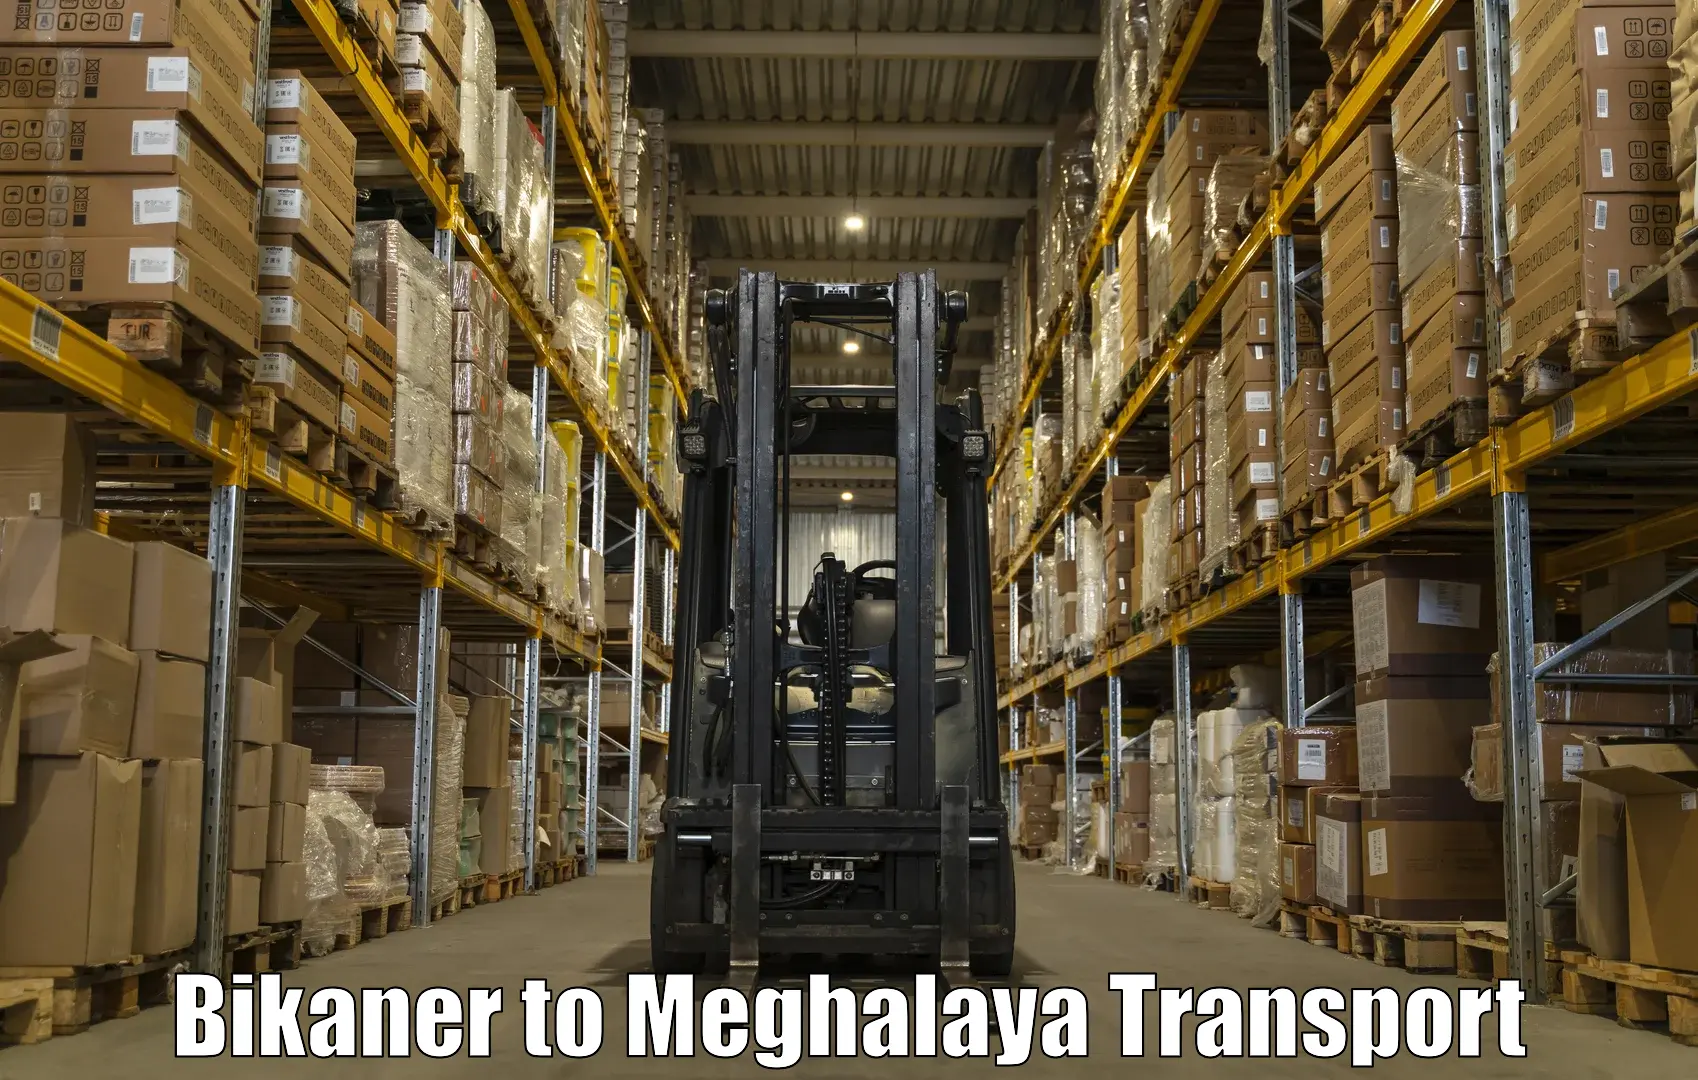 Lorry transport service Bikaner to Meghalaya